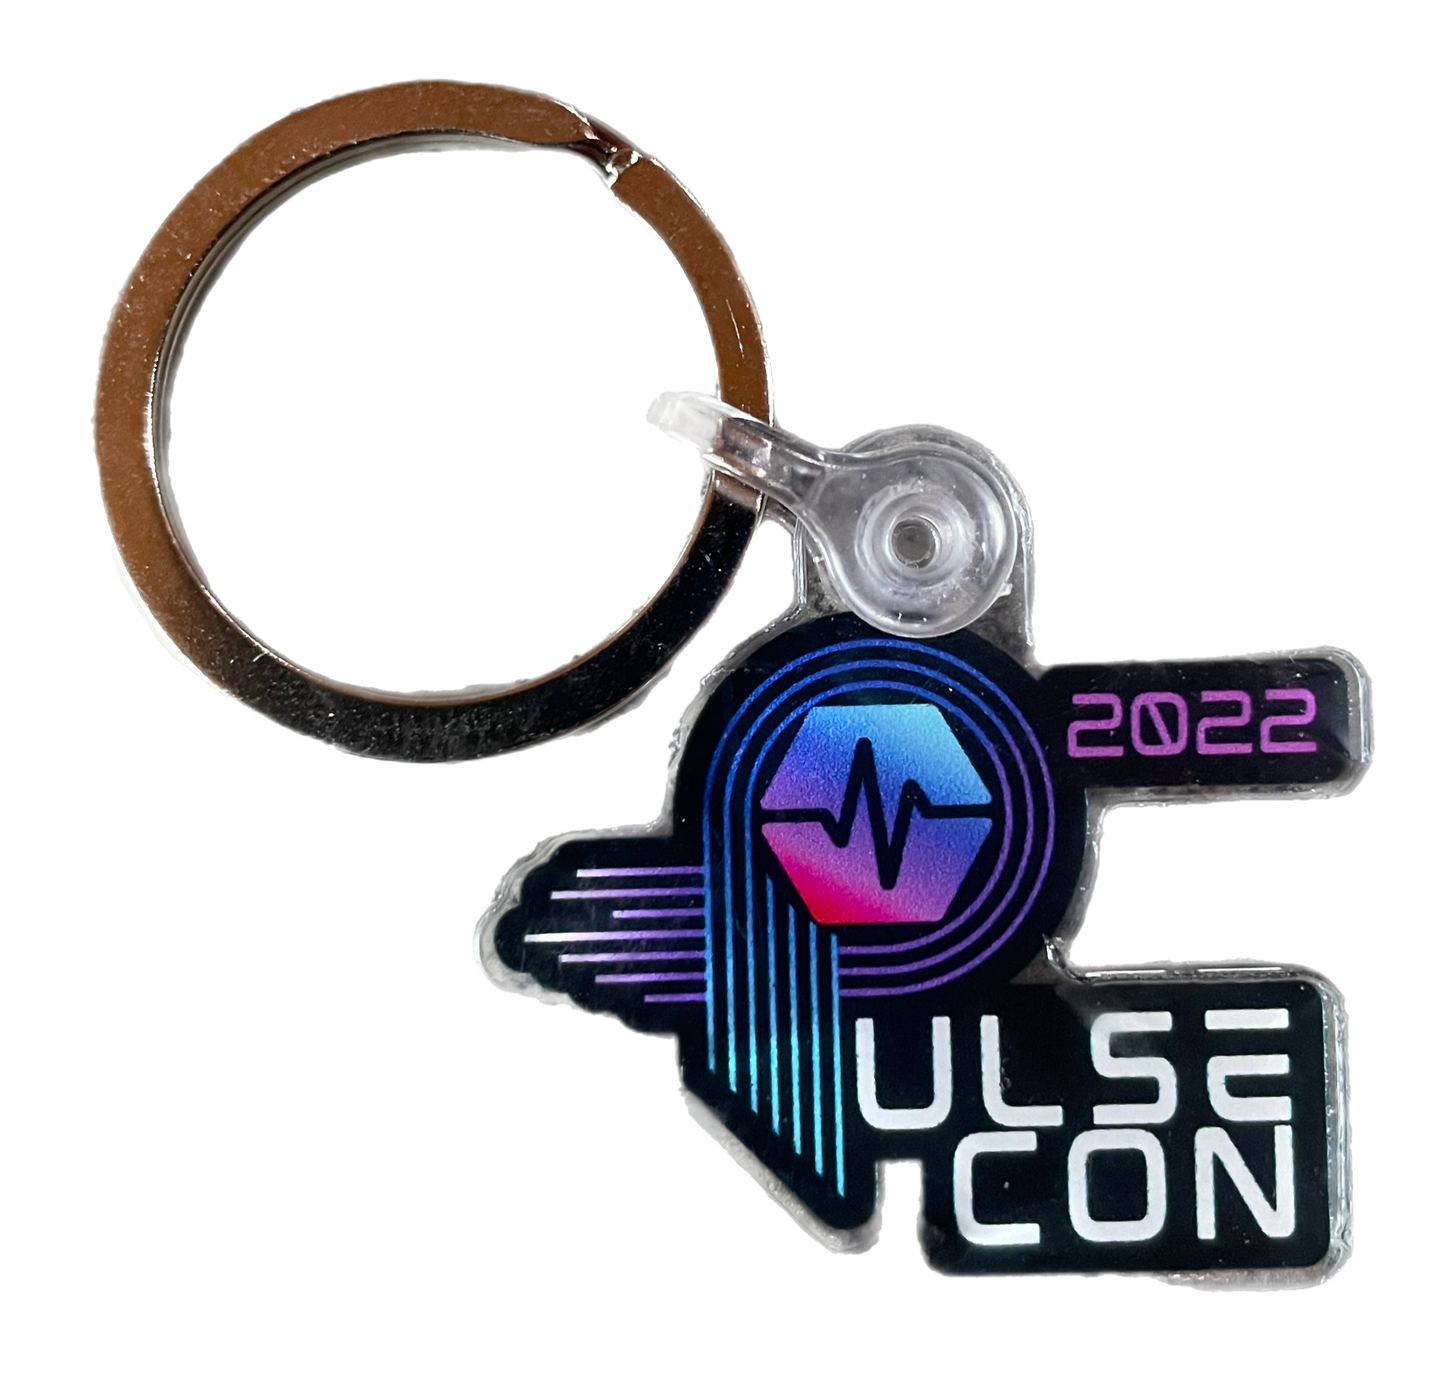 Pulsecon Keychain